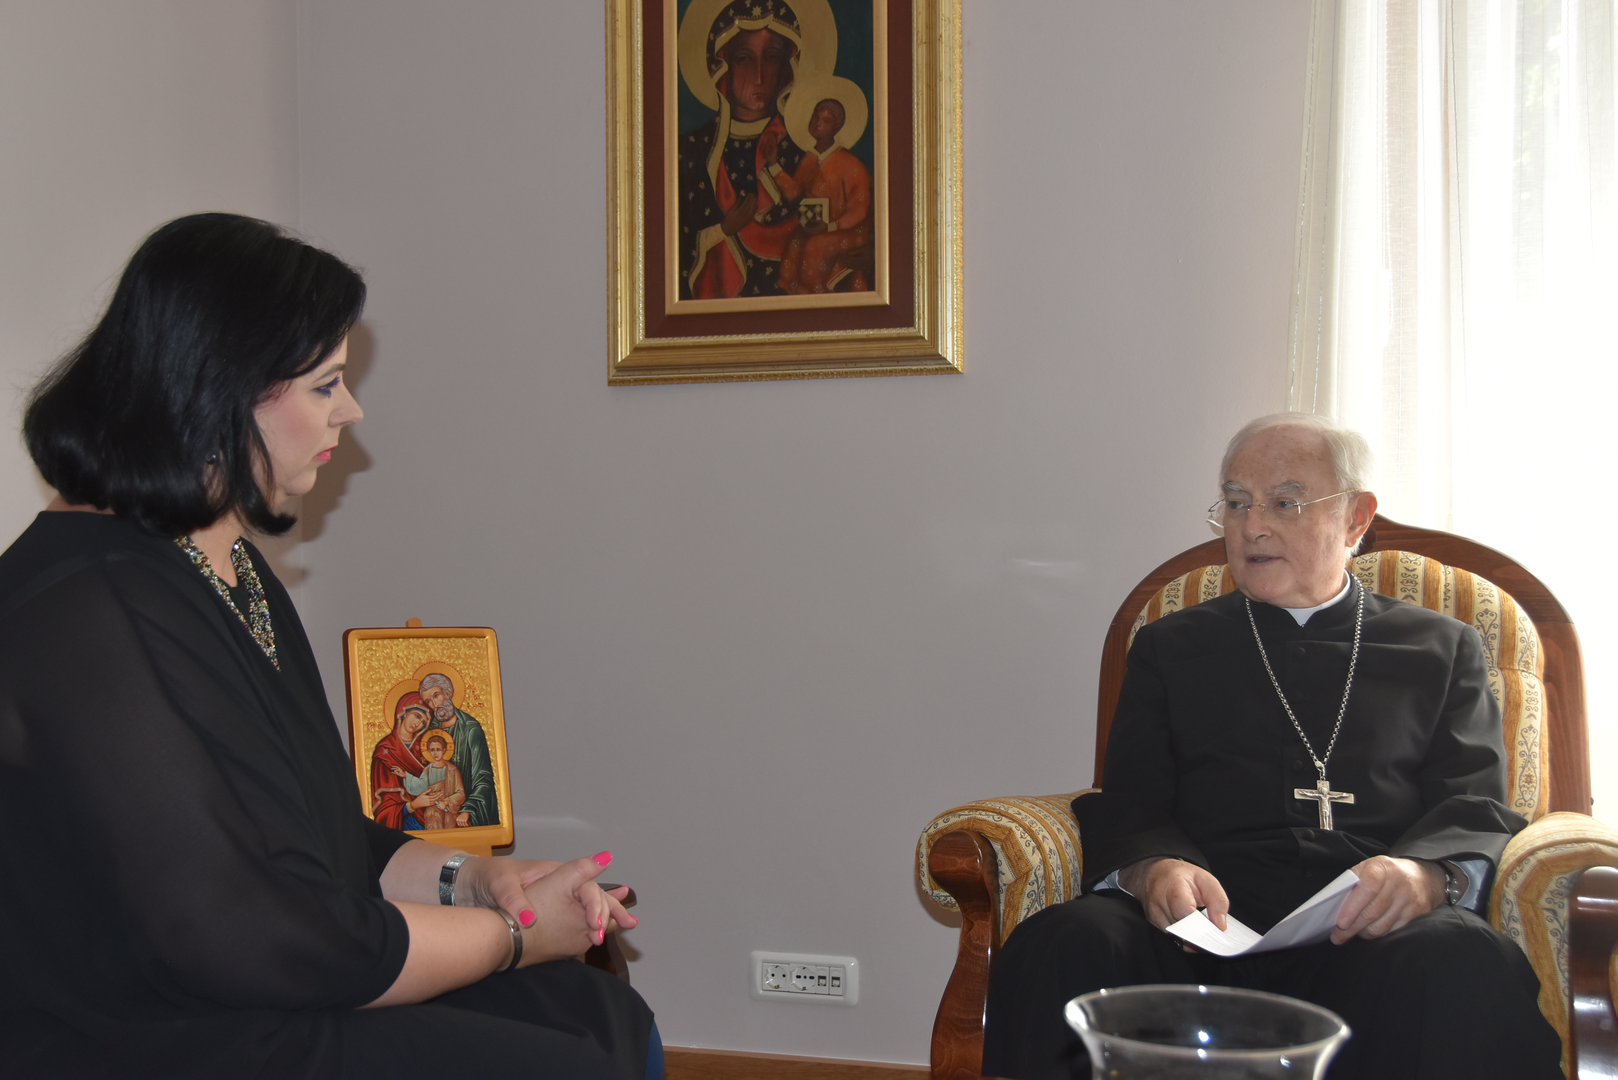 Nadbiskup Henryk Hoser, podrijetlom Poljak, razgovarao je s našom novinarkom Valentinom Rupčić u župnom uredu u Međugorju